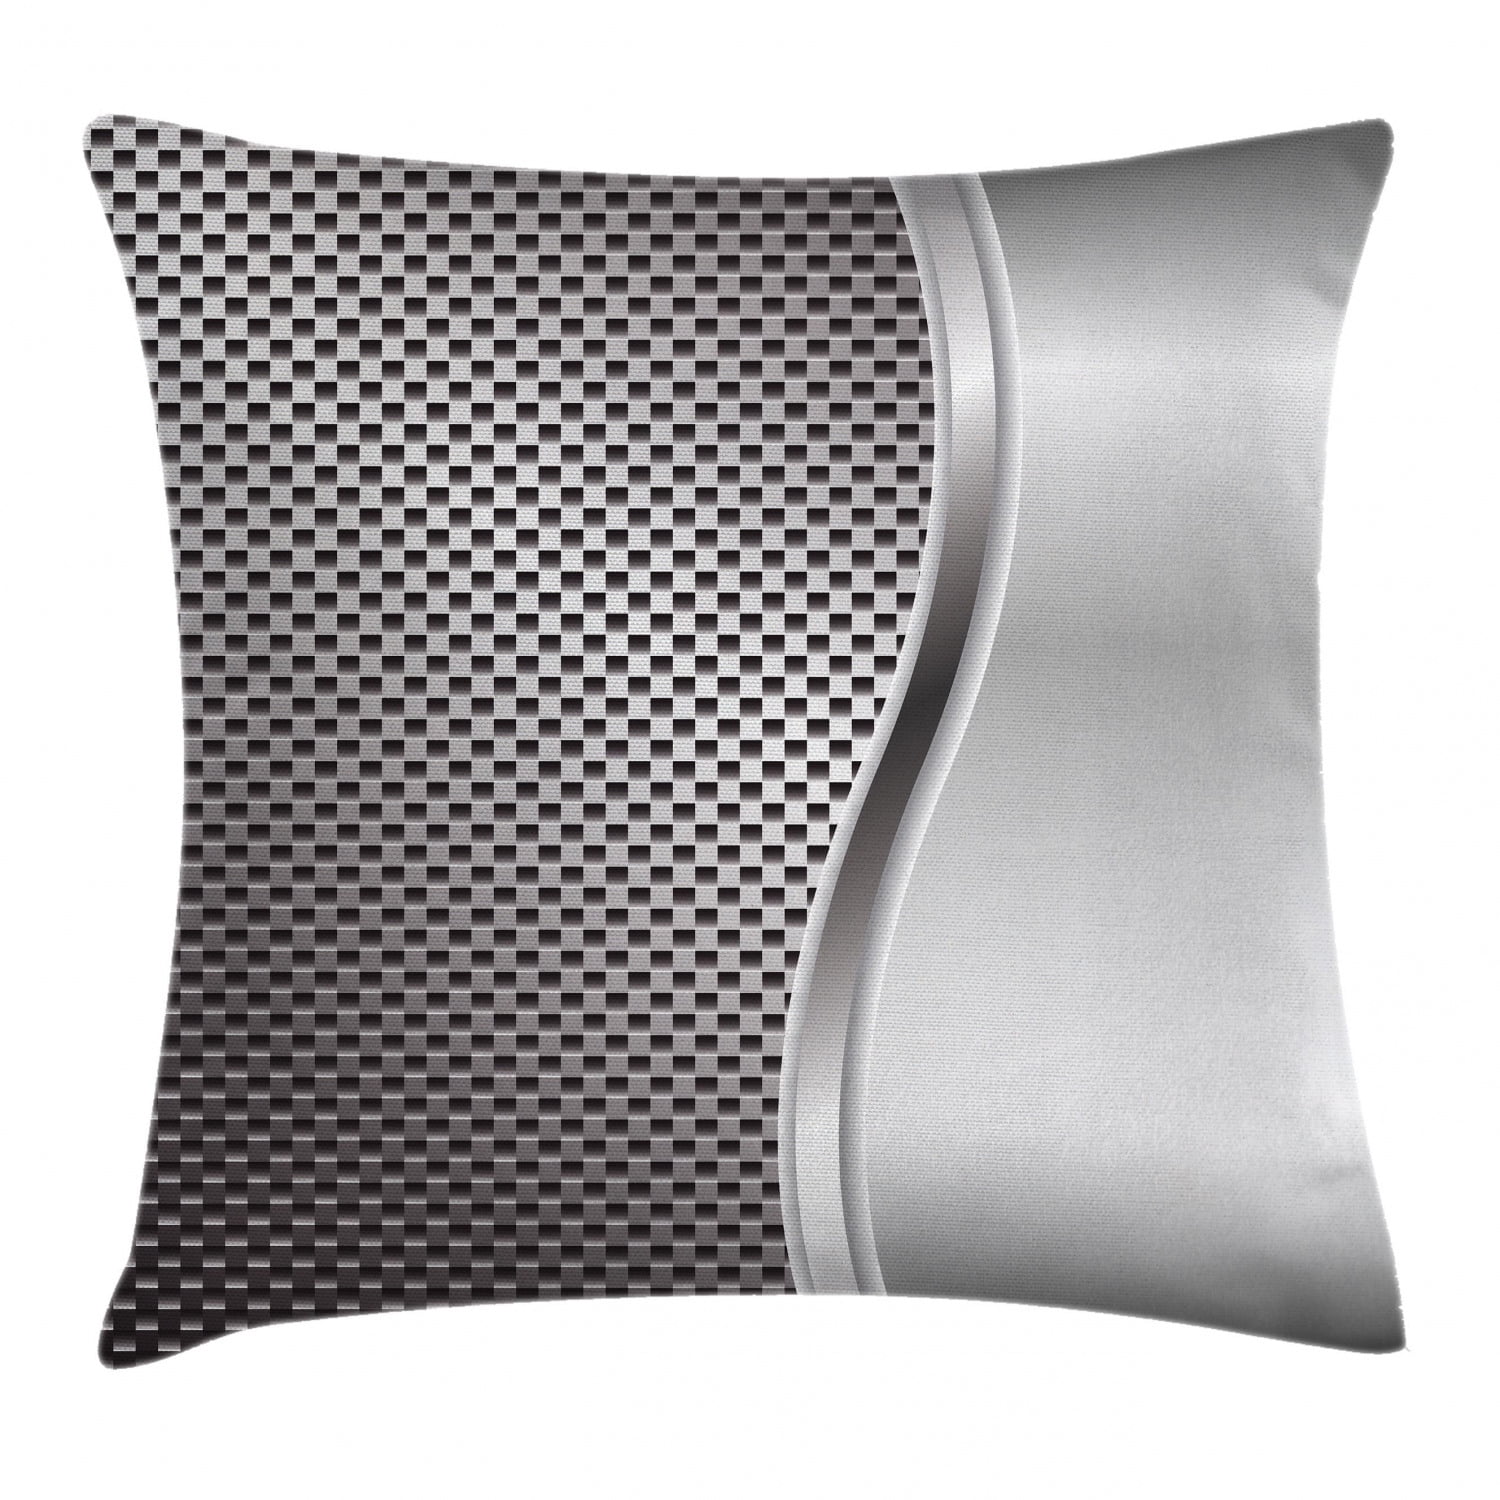 silver decorative pillows